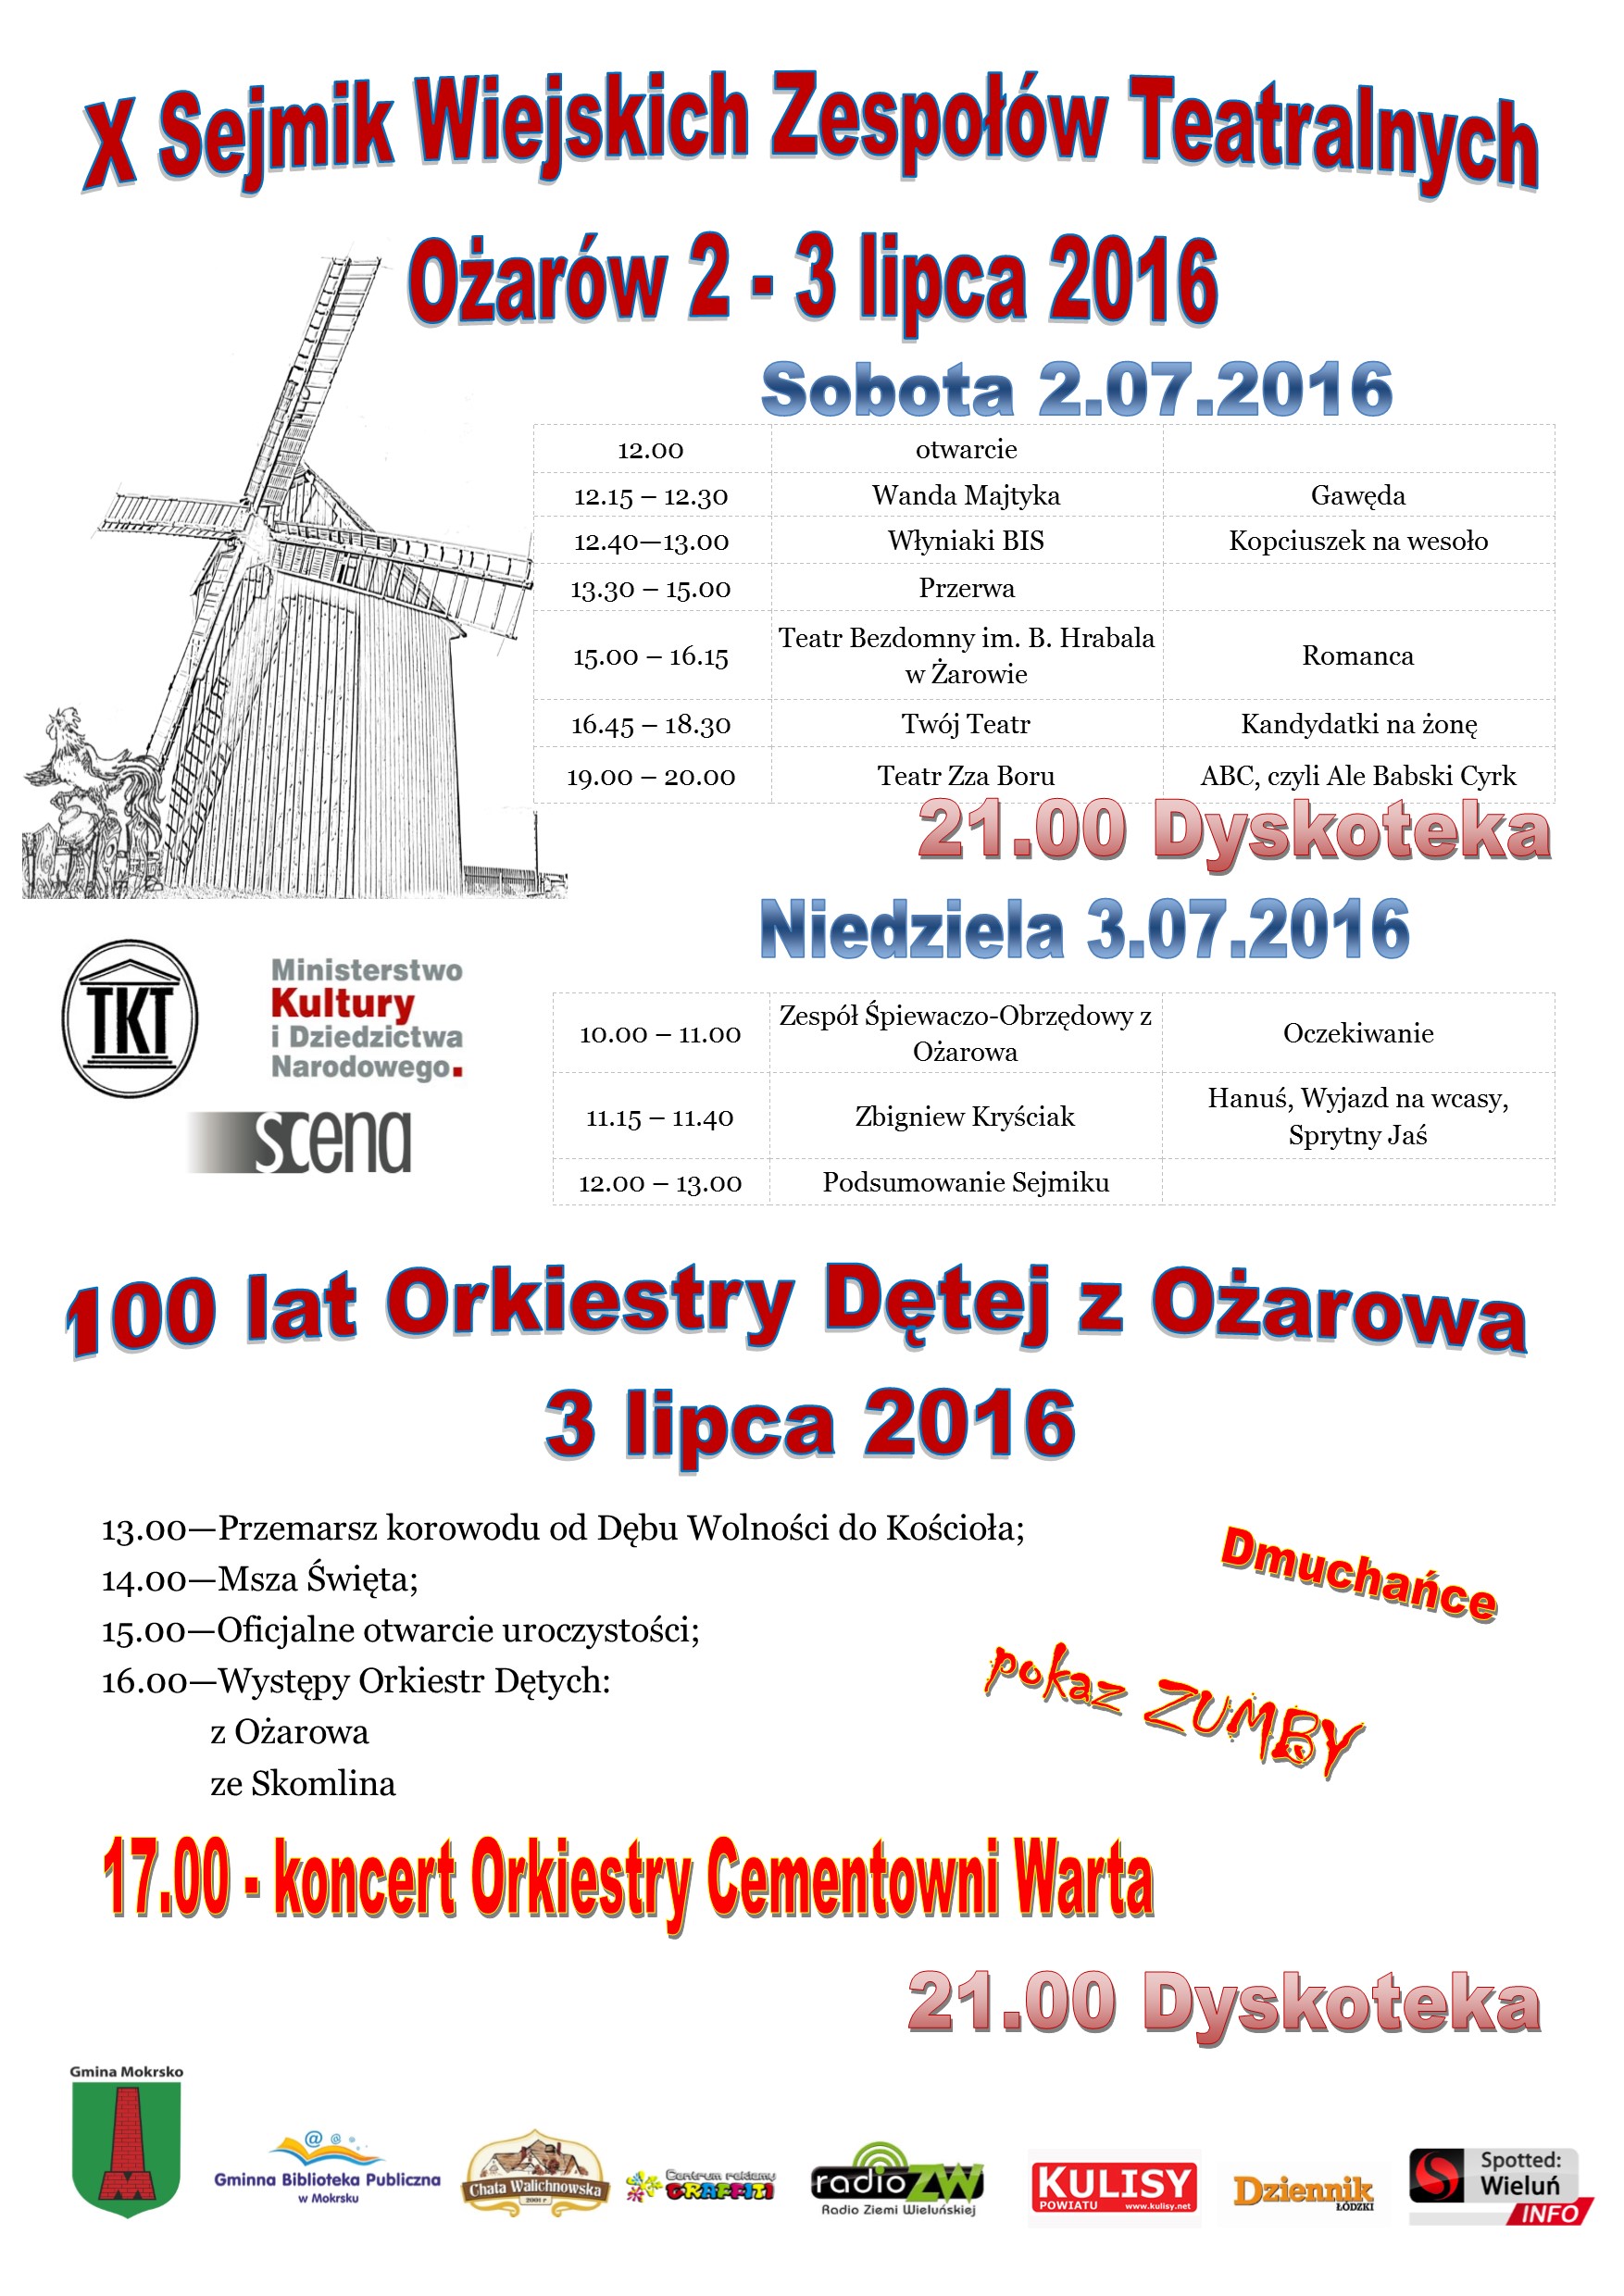 Więcej o: Zaproszenie na X Sejmik Wiejskich Zespołów Teatralnych i 100-lecie Orkiestry Dętej w Ożarowie